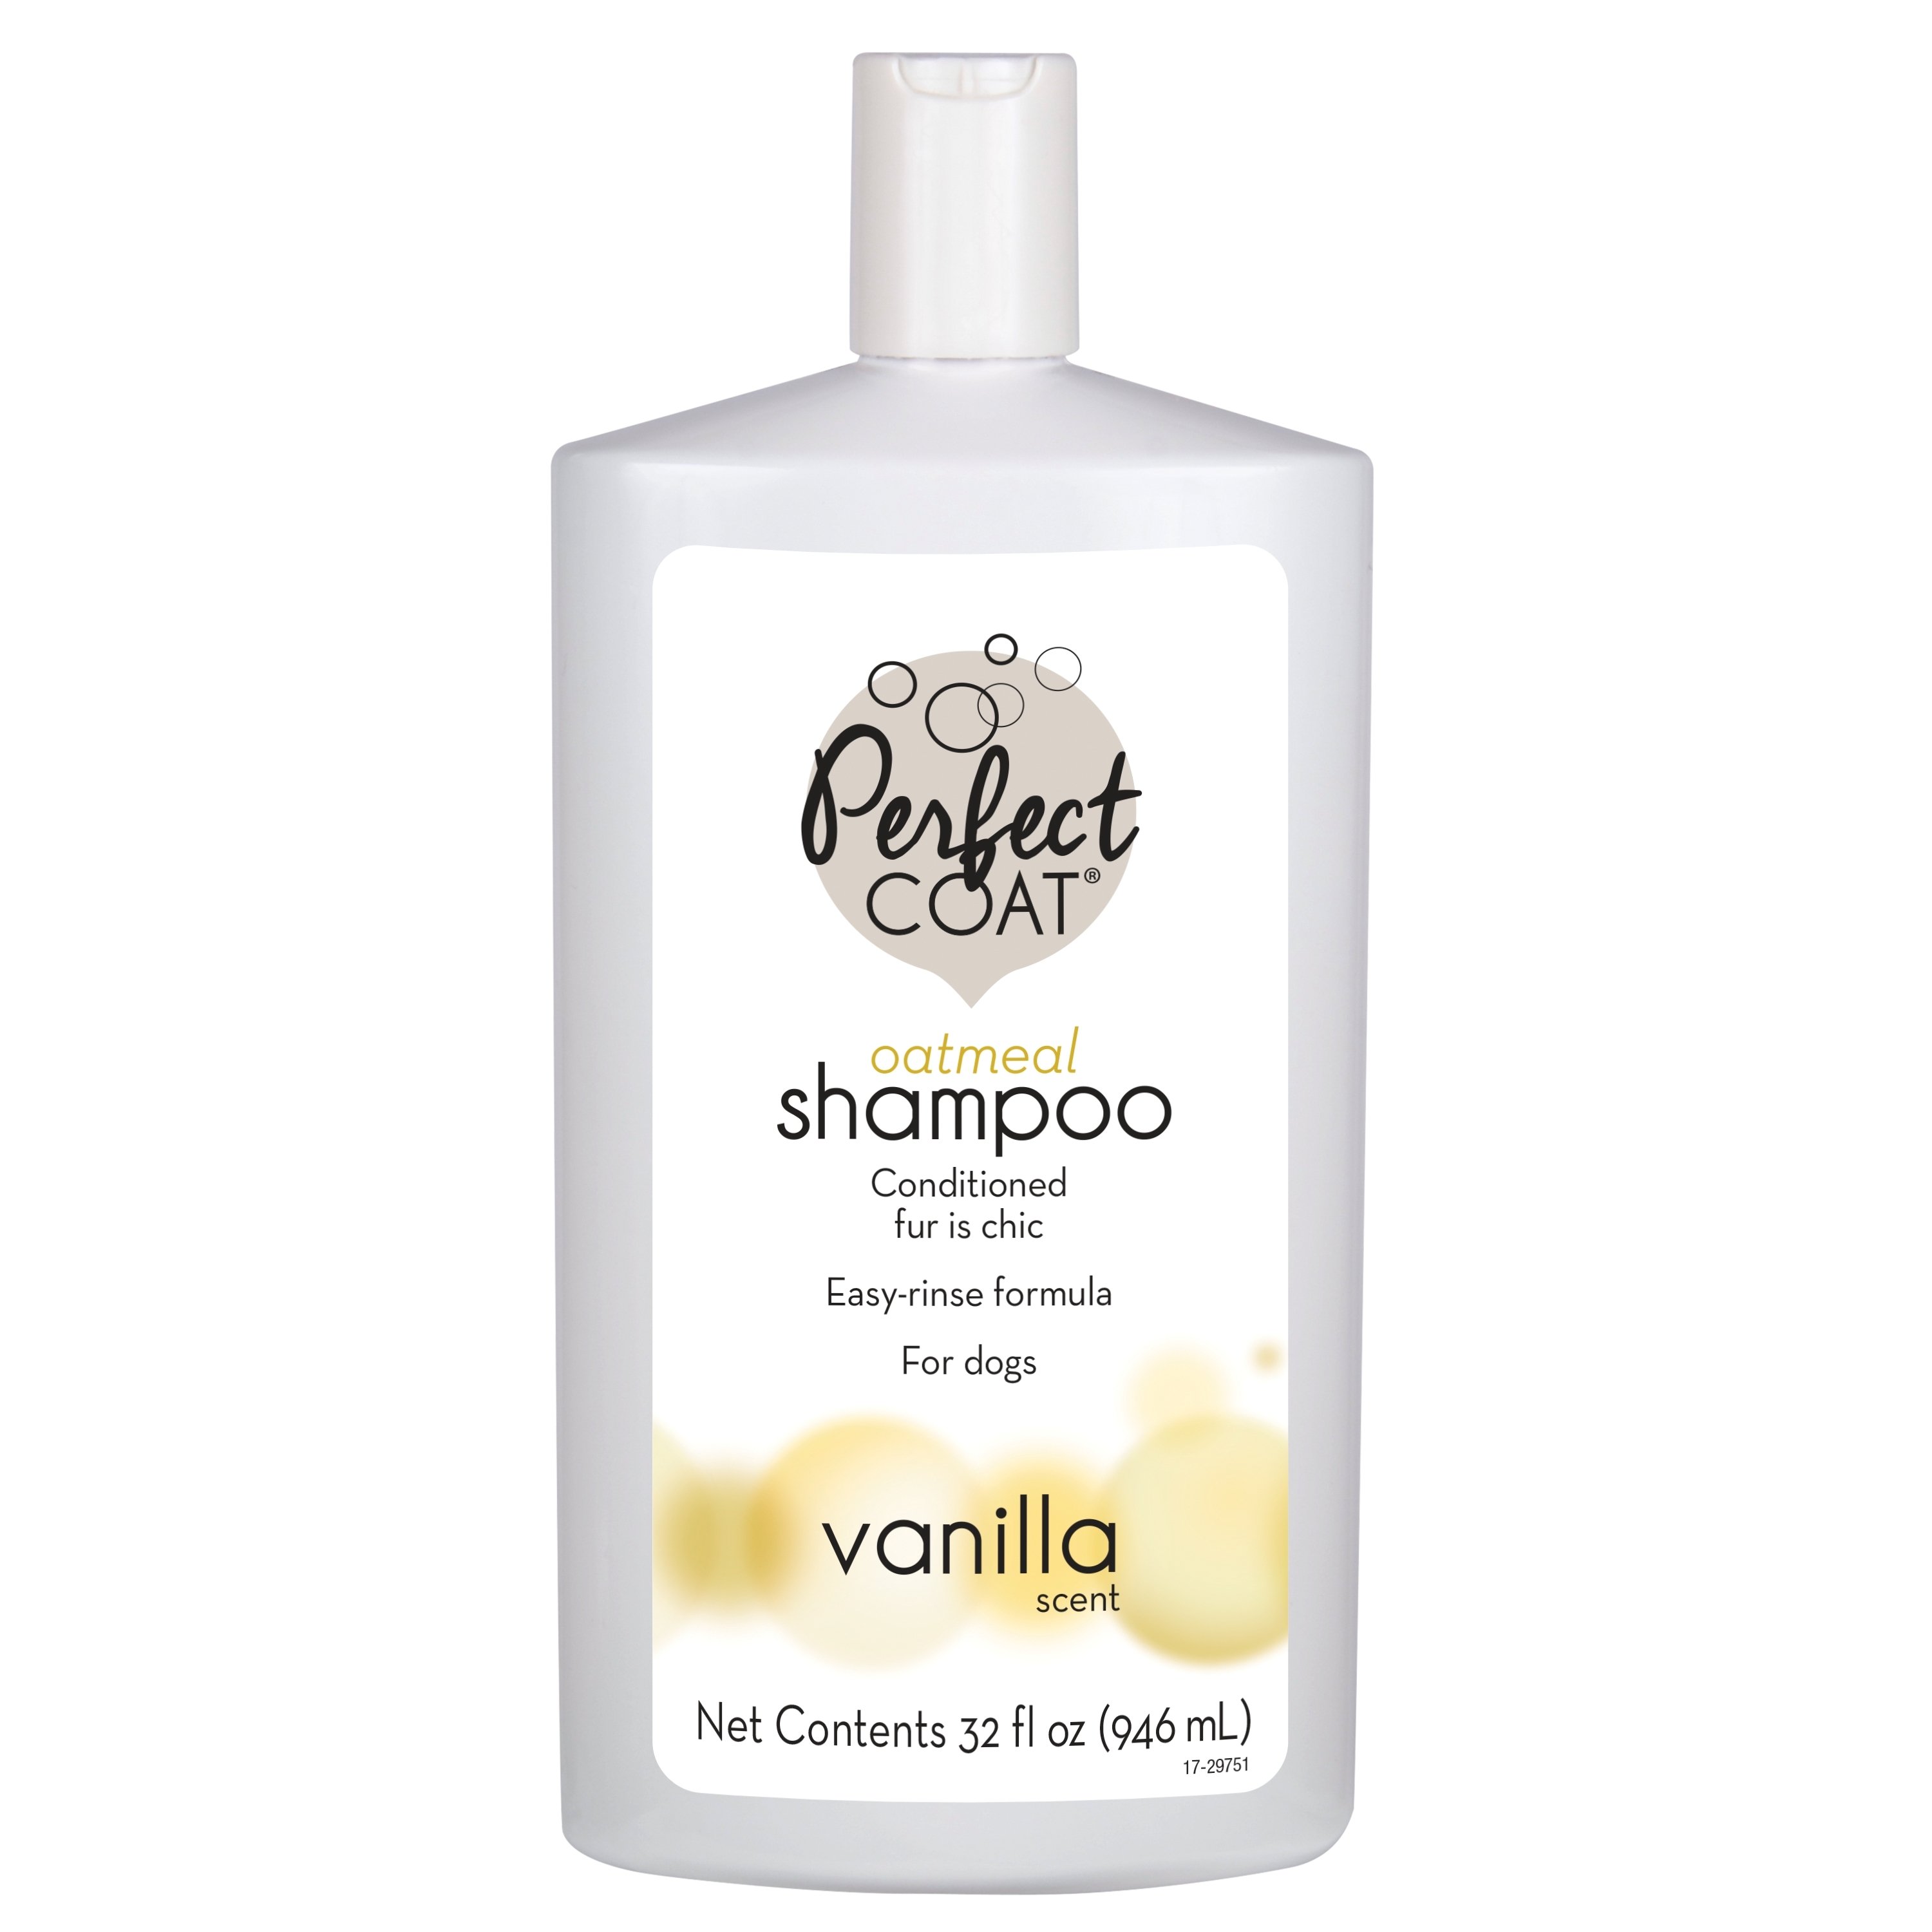 Шампунь 8in1 Natural Oatmeal Shampoo для собак, успокаивающий для раздраженной кожи